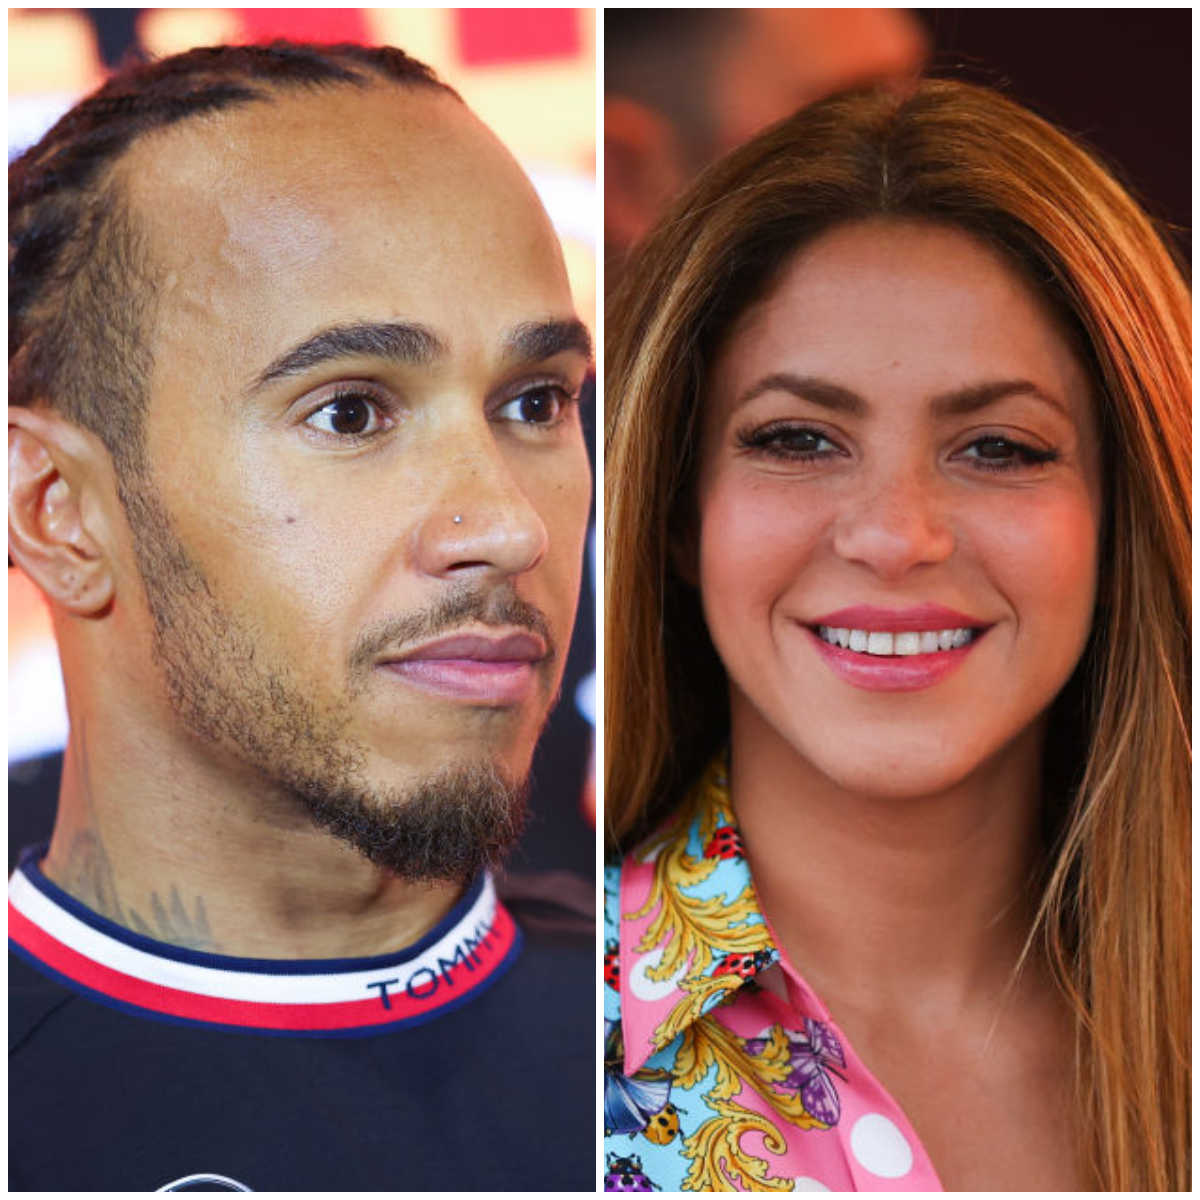 Lewis Hamilton, famoso piloto de la F1 y la cantante colombiana Shakira. El británico avivó rumores de una posible relación tras confesar su gusto